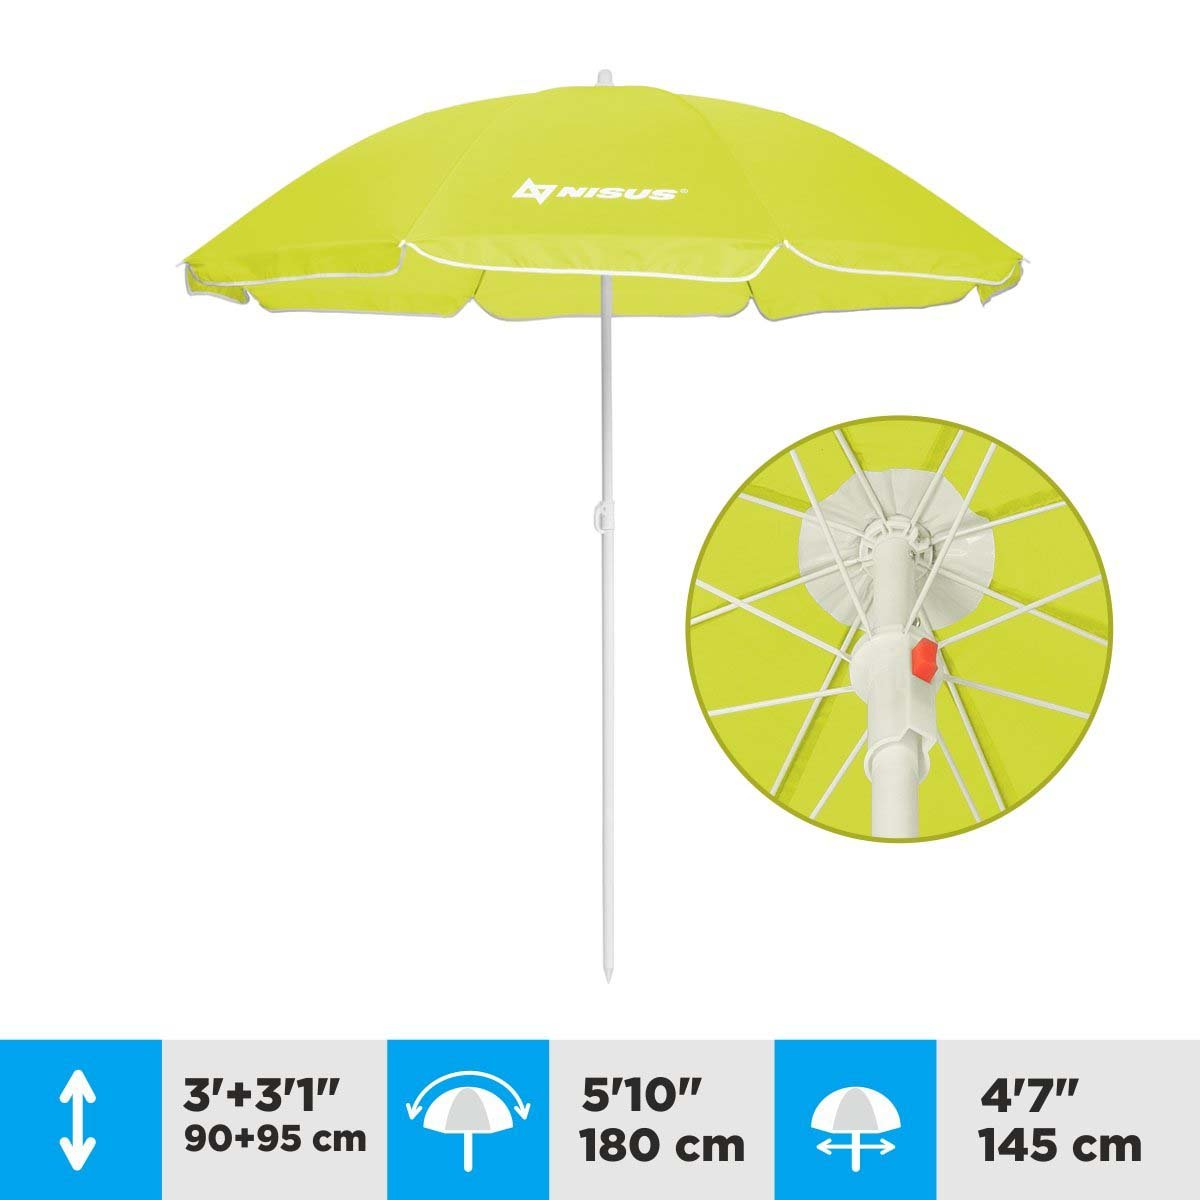 A 4.7 ft Lime Green Folding Beach Umbrella is 6.1 feet high